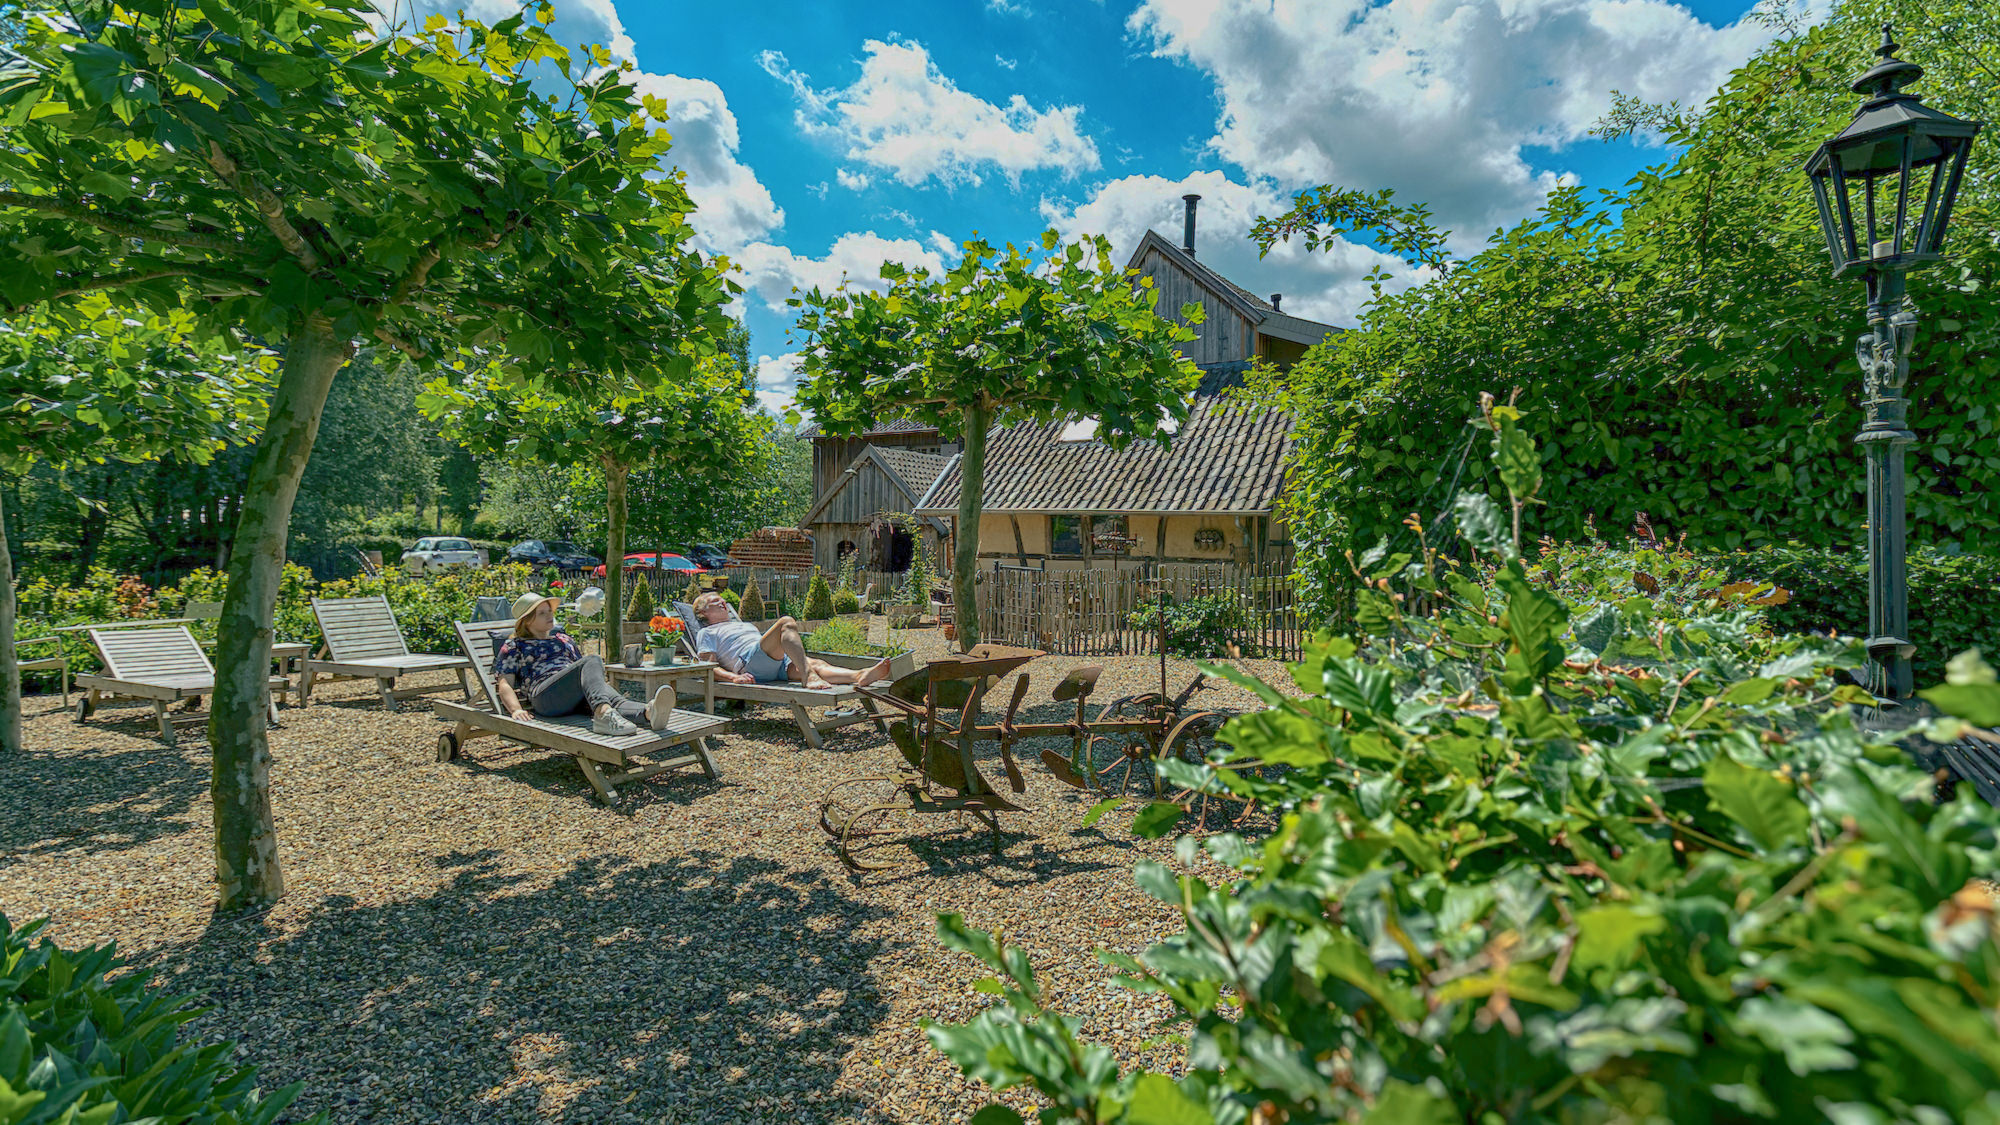 Gasten genieten op een ligbed in de tuin van Hoeve de witte Gans die aan het einde zichtbaar is.